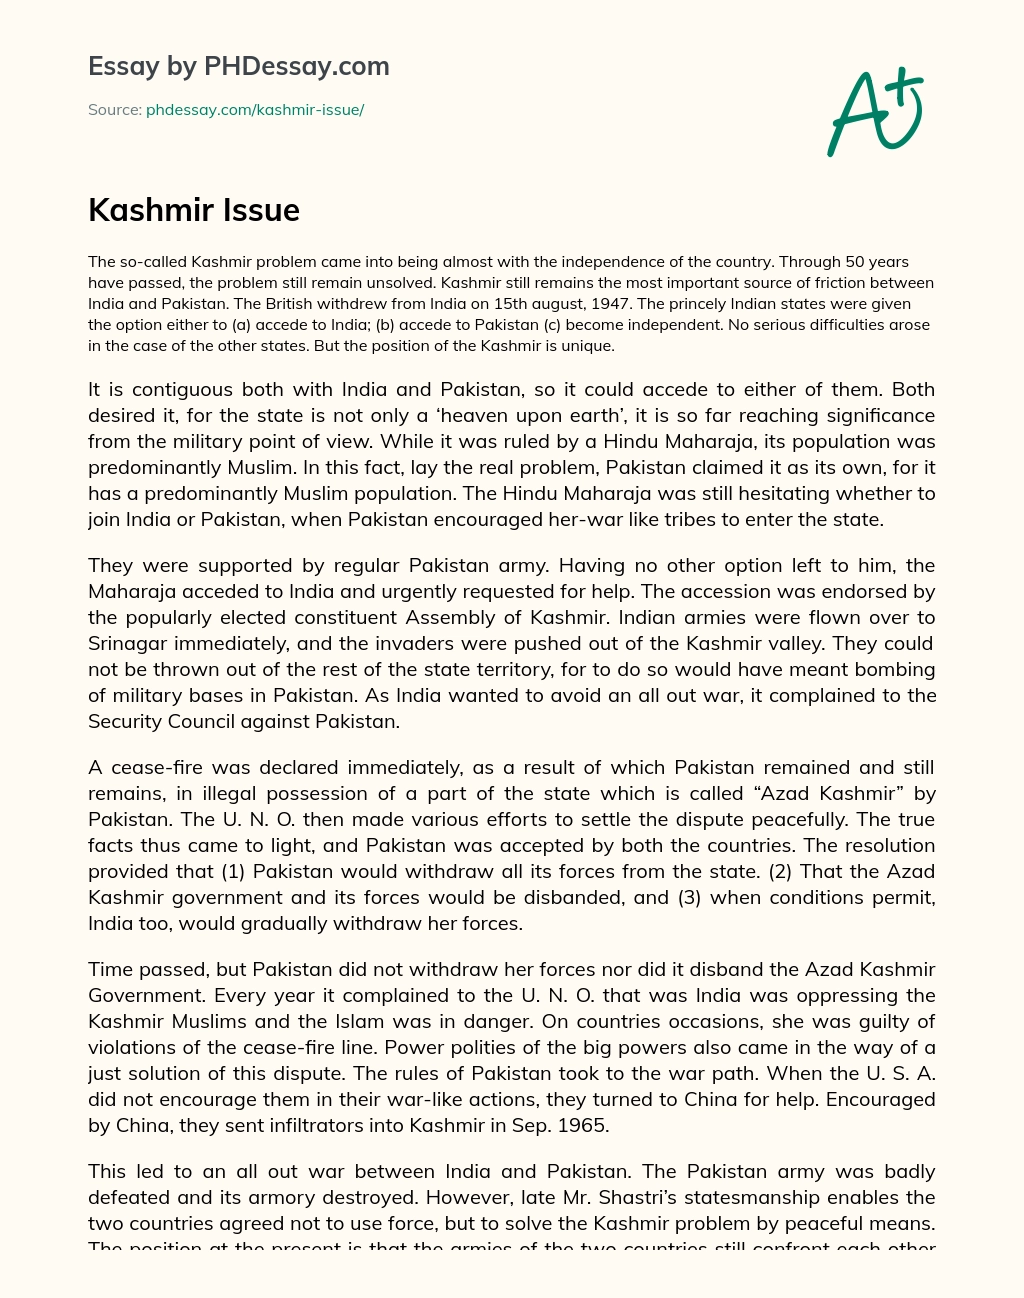 Kashmir Issue essay